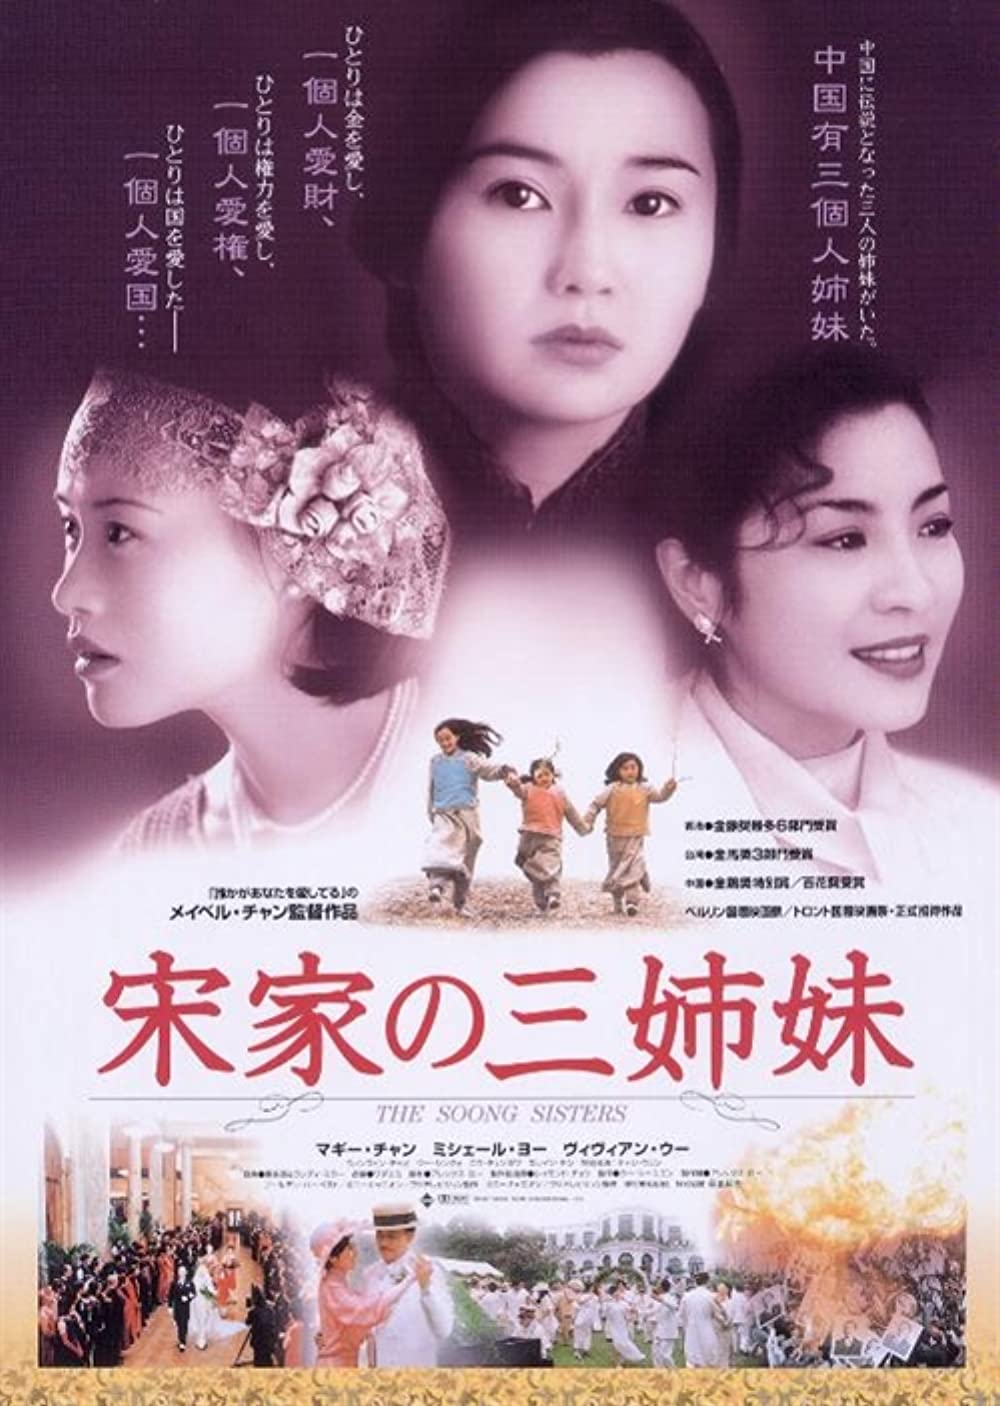 Постер к фильму «Сестры Сун» в Японии